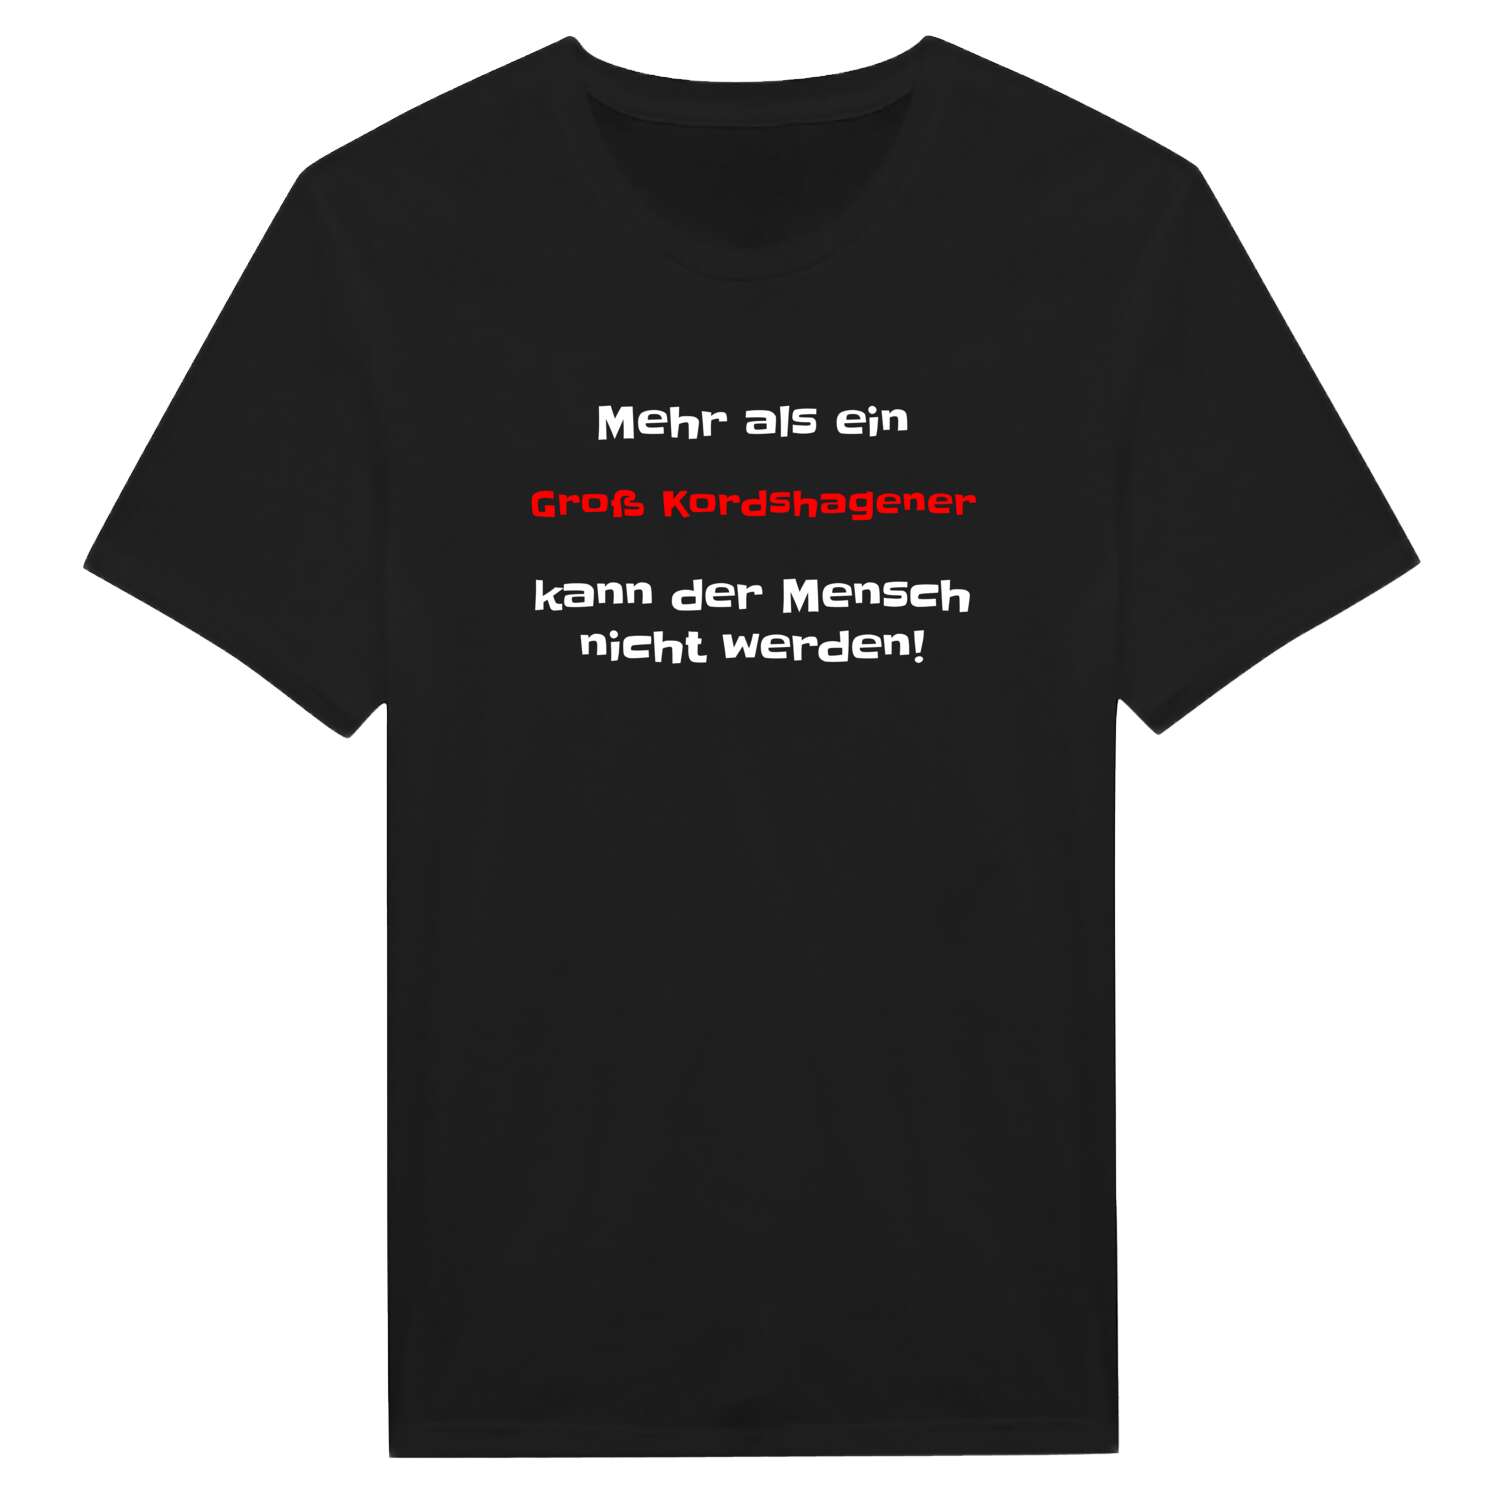 Groß Kordshagen T-Shirt »Mehr als ein«